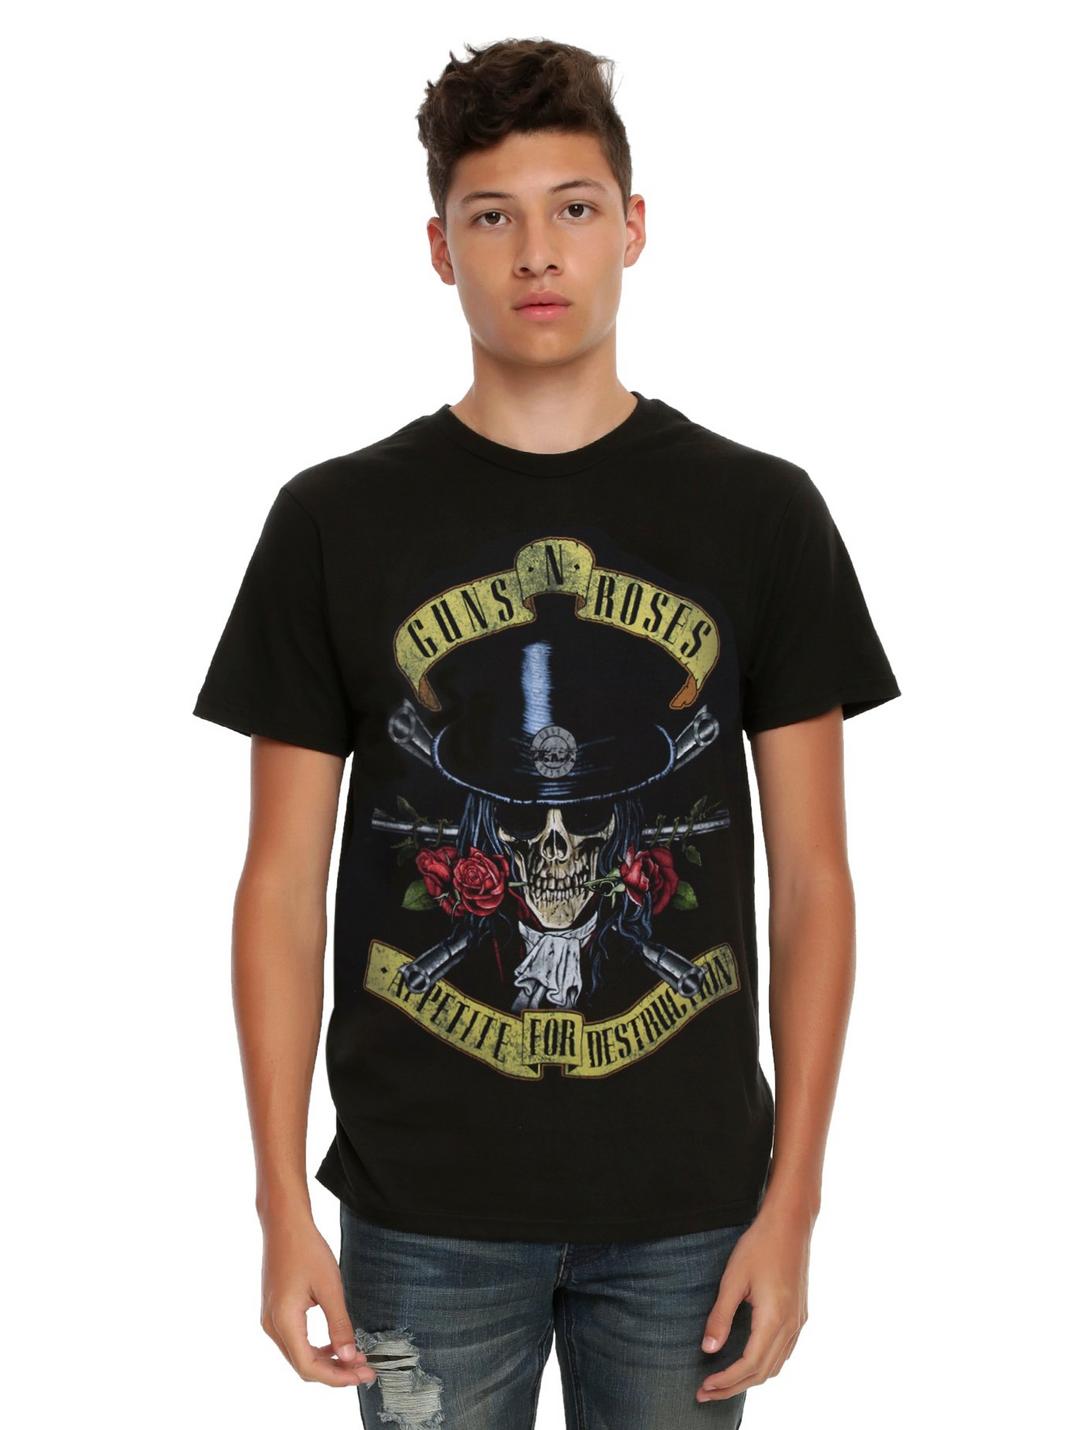 Guns N' Roses Appetite For Destruction Skull T-Shirt, BLACK, hi-res